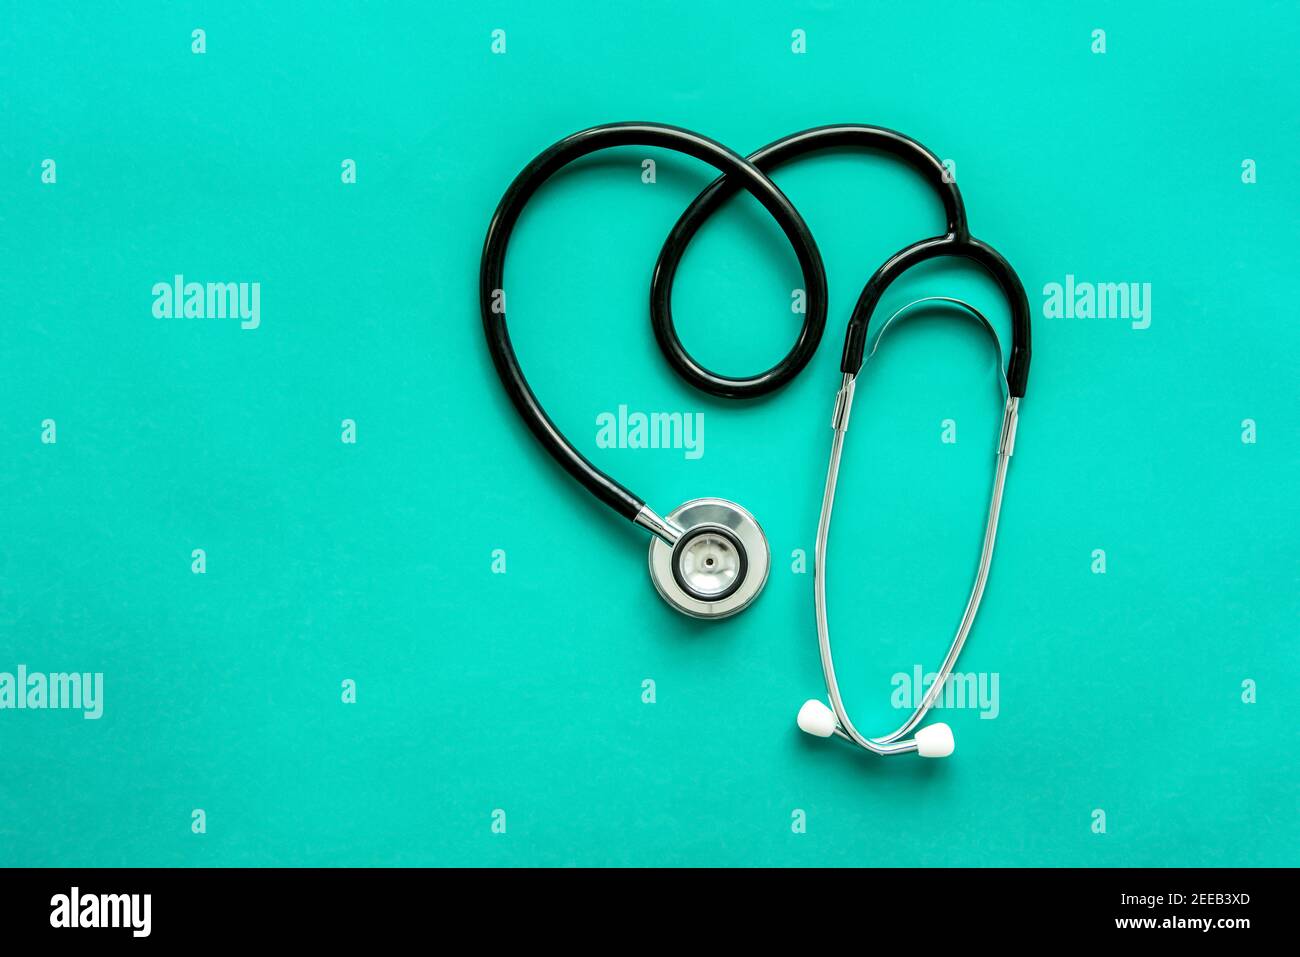 Stethoskop, medizinisches Instrument, in Herzform auf hellgrünem Hintergrund Stockfoto